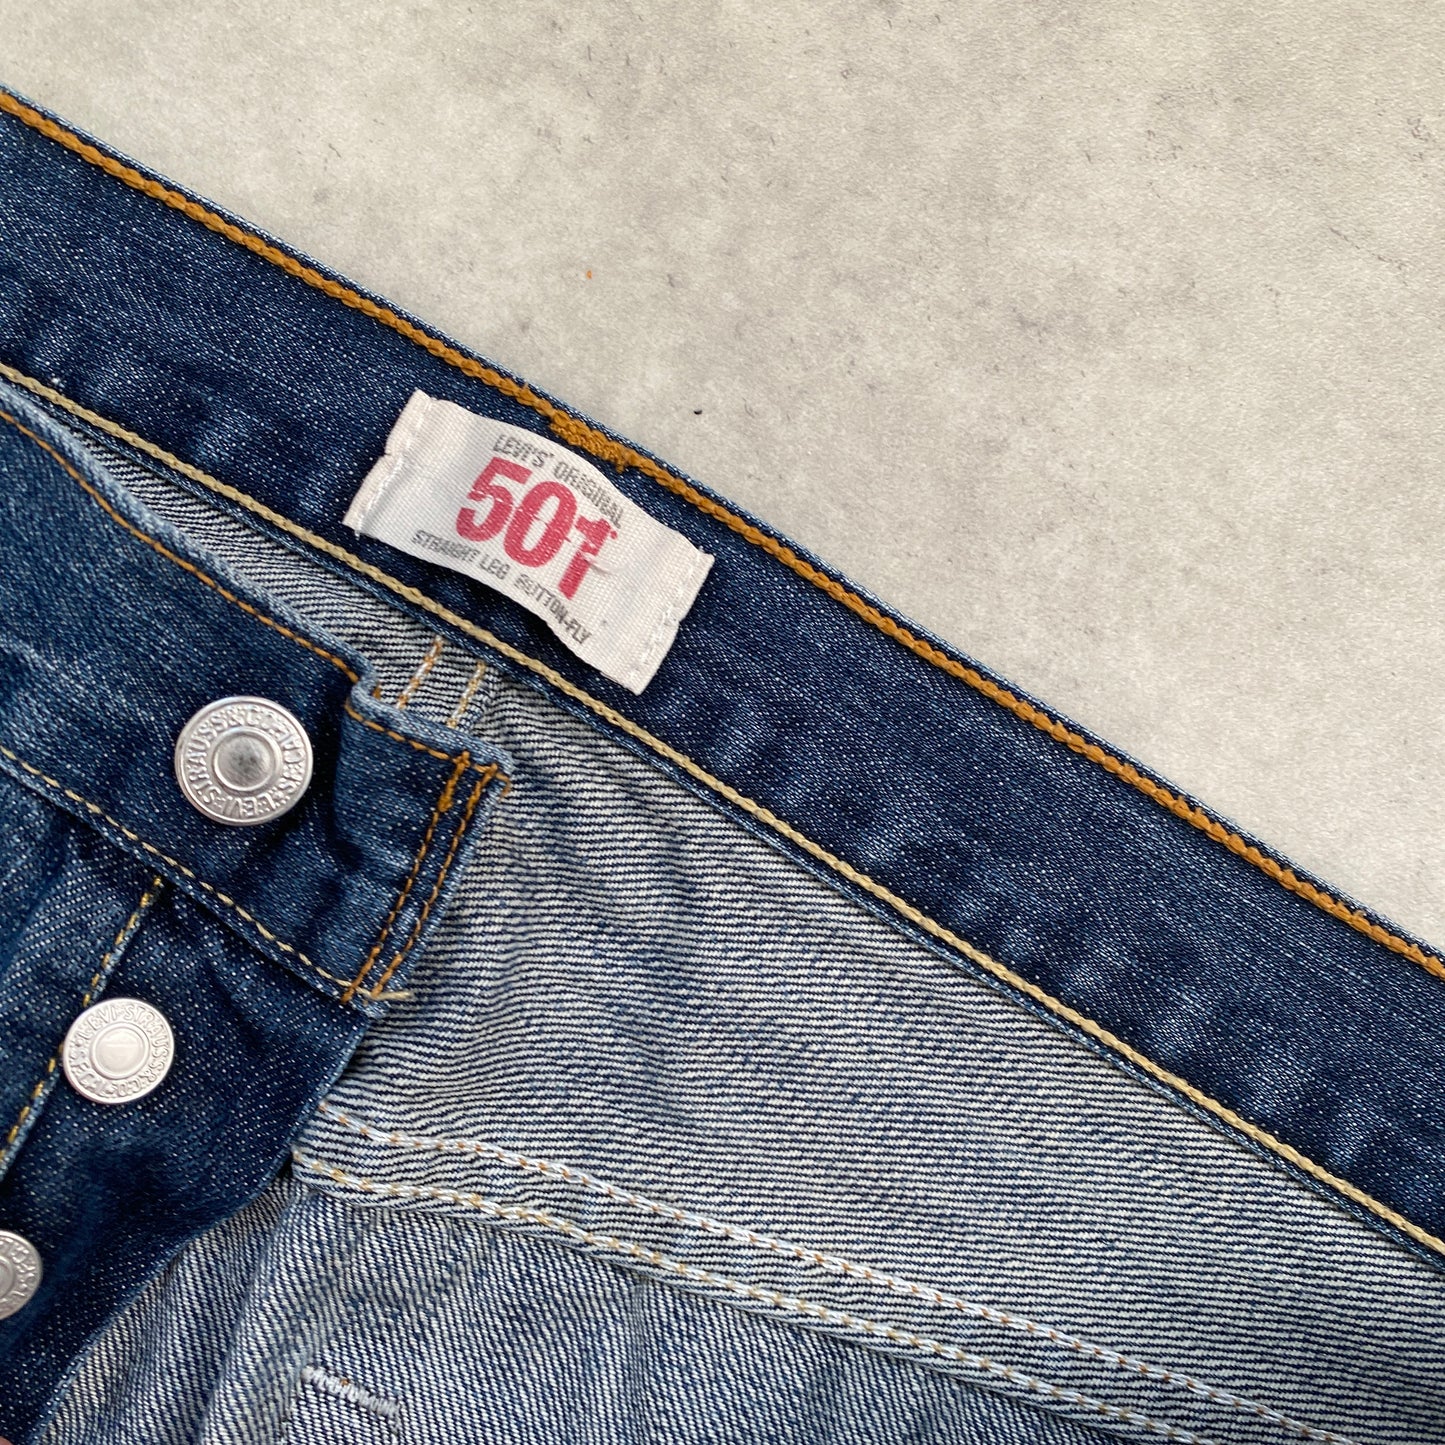 Levi‘s 501 vintage denim pants (34/34)